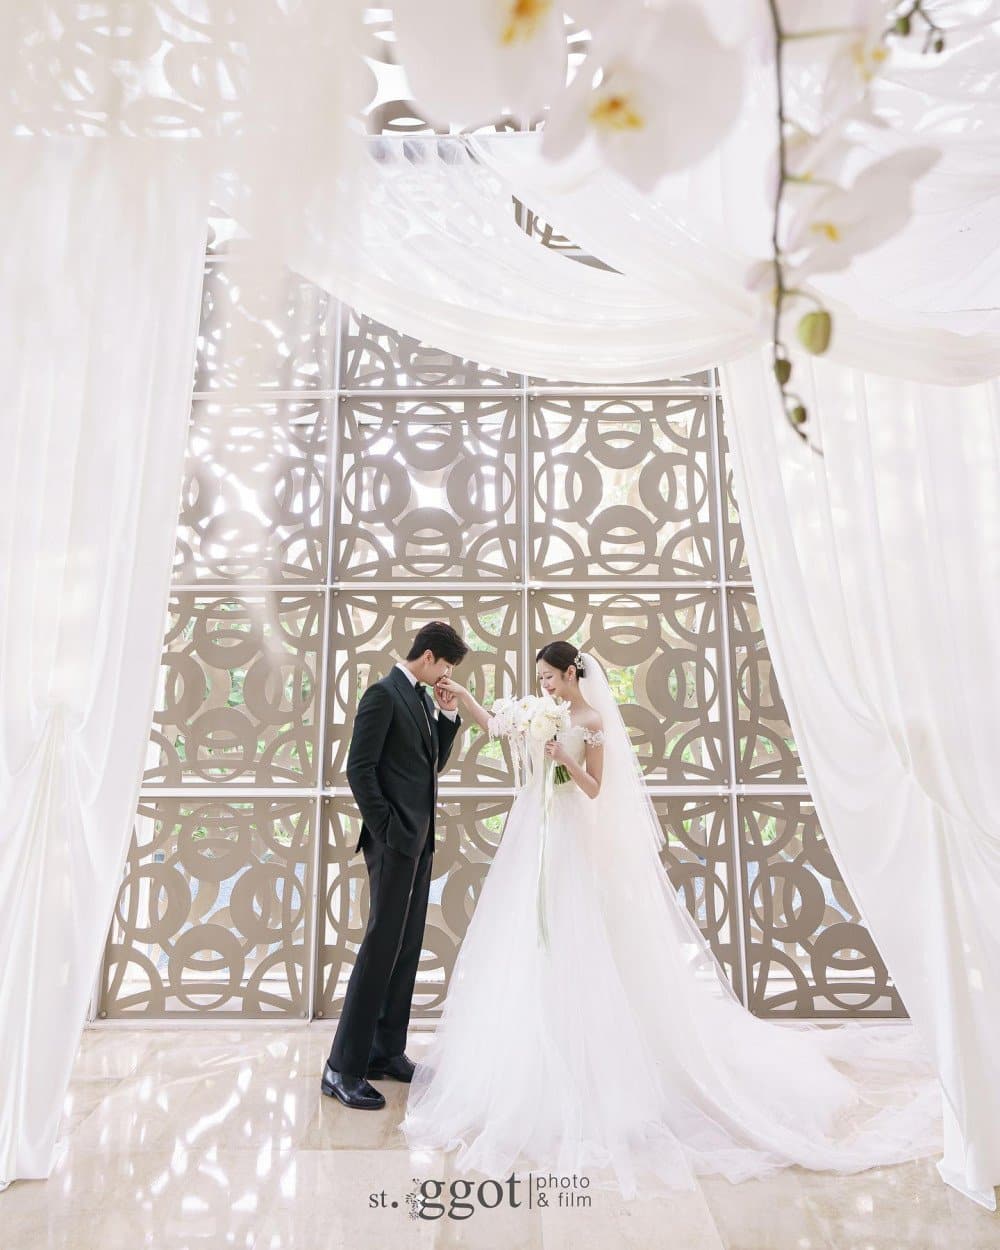 Thunder и Мими поделились свадебными фотографиями, сделанными на Бали